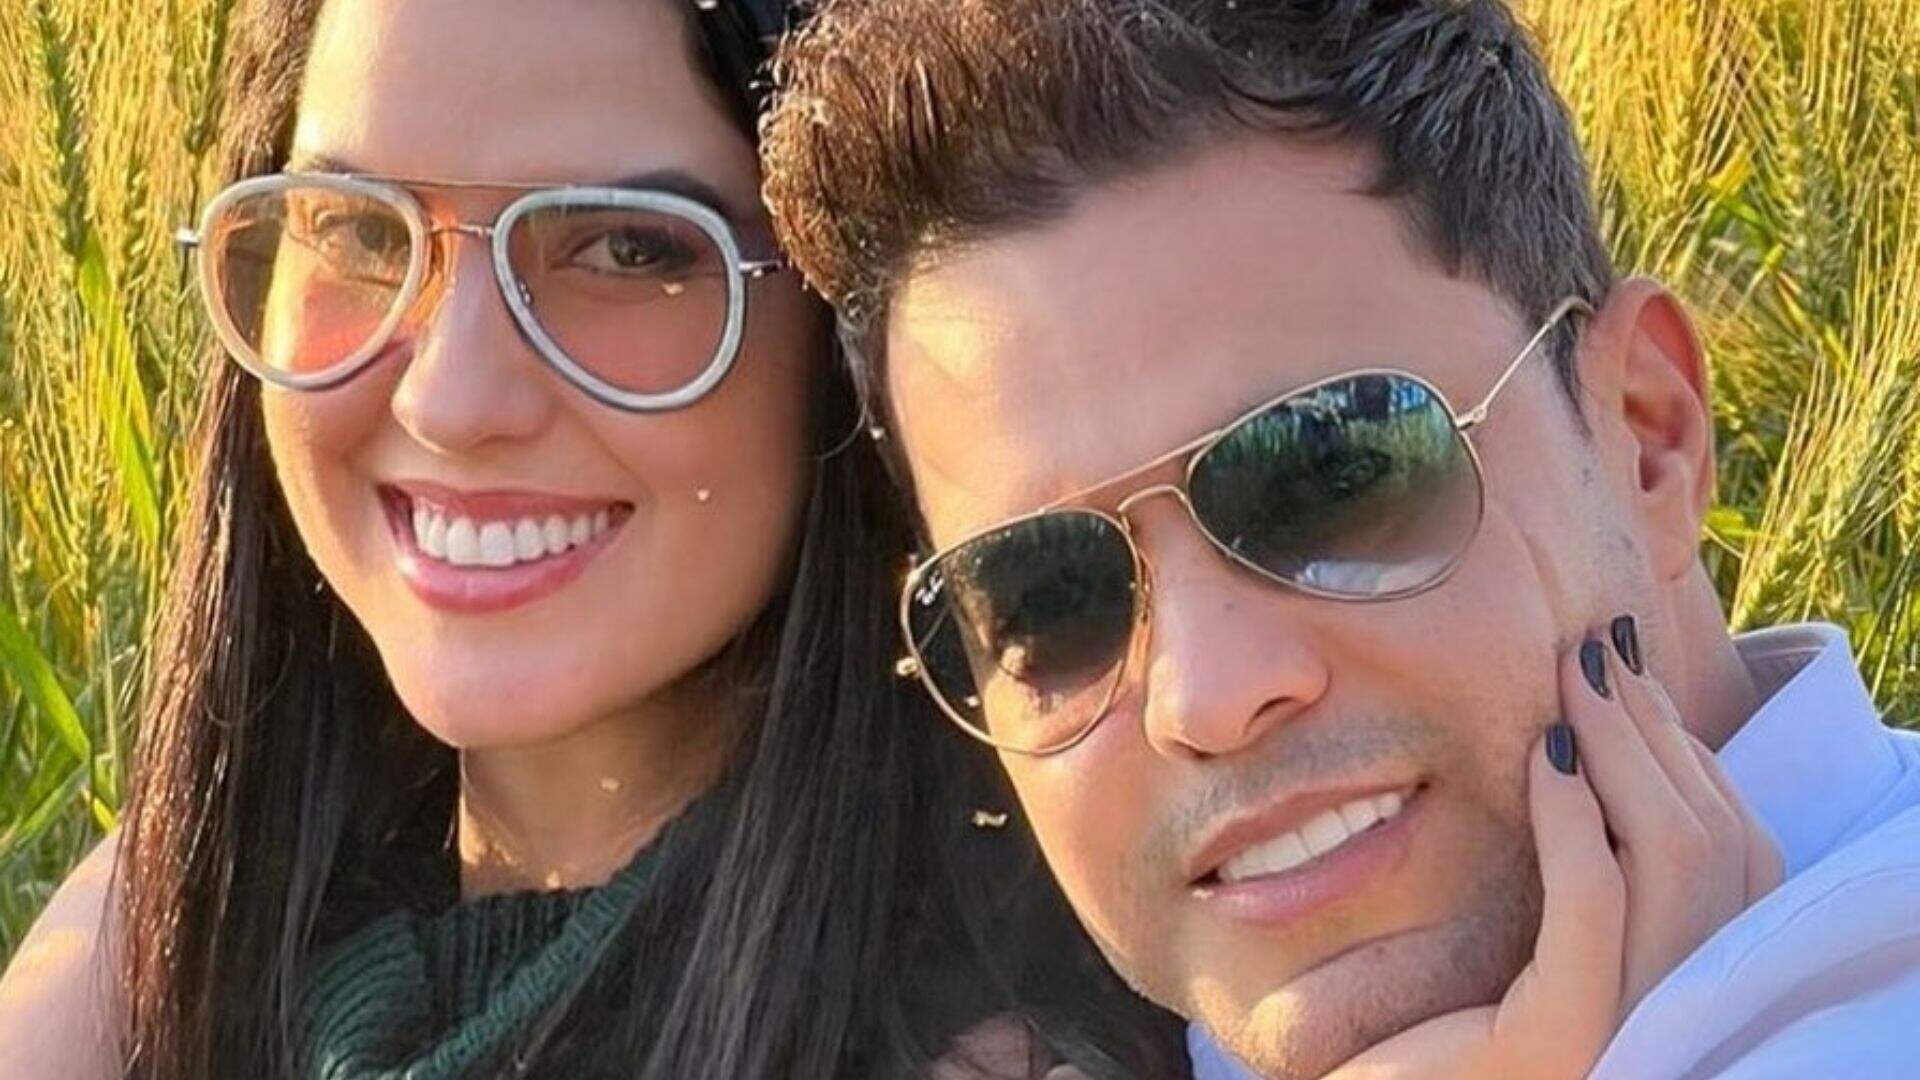 Graciele Larcerda revela “proibição” de Zezé di Camargo no início do namoro: “Ele começou a pirar” - Metropolitana FM